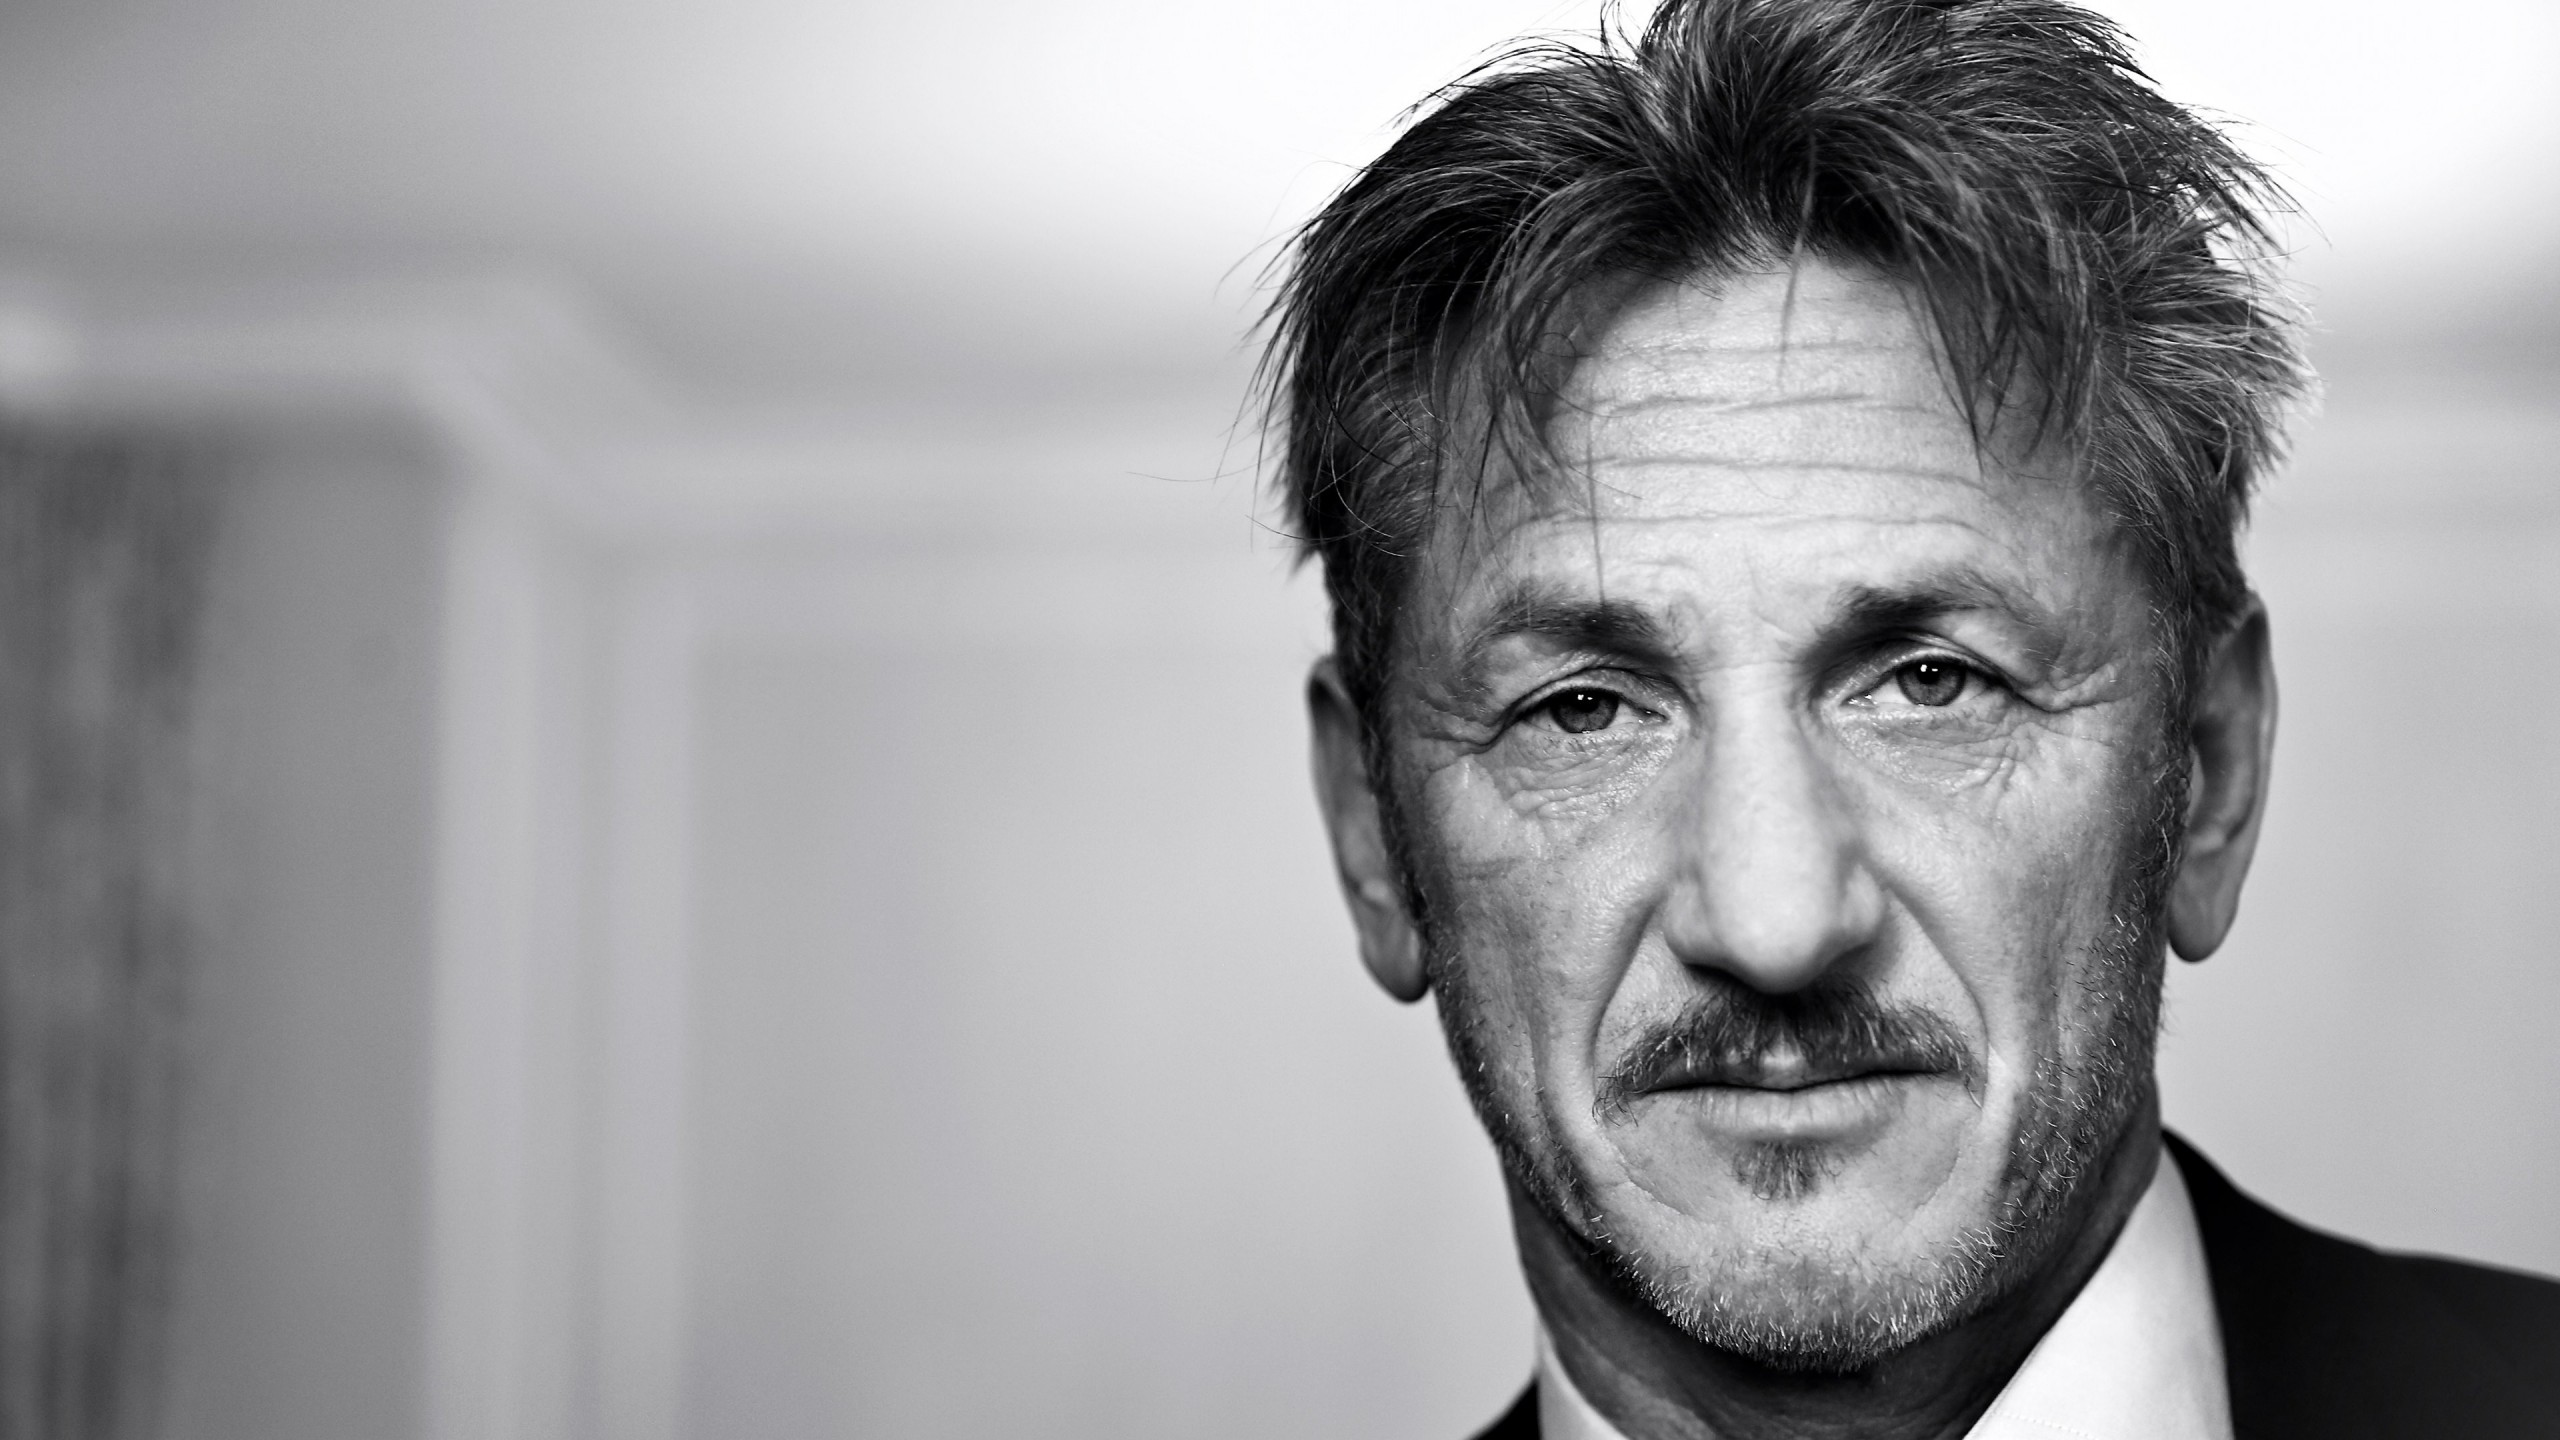 Sean Penn Portrait in Black & White Wallpaper for Social Media YouTube Channel Art